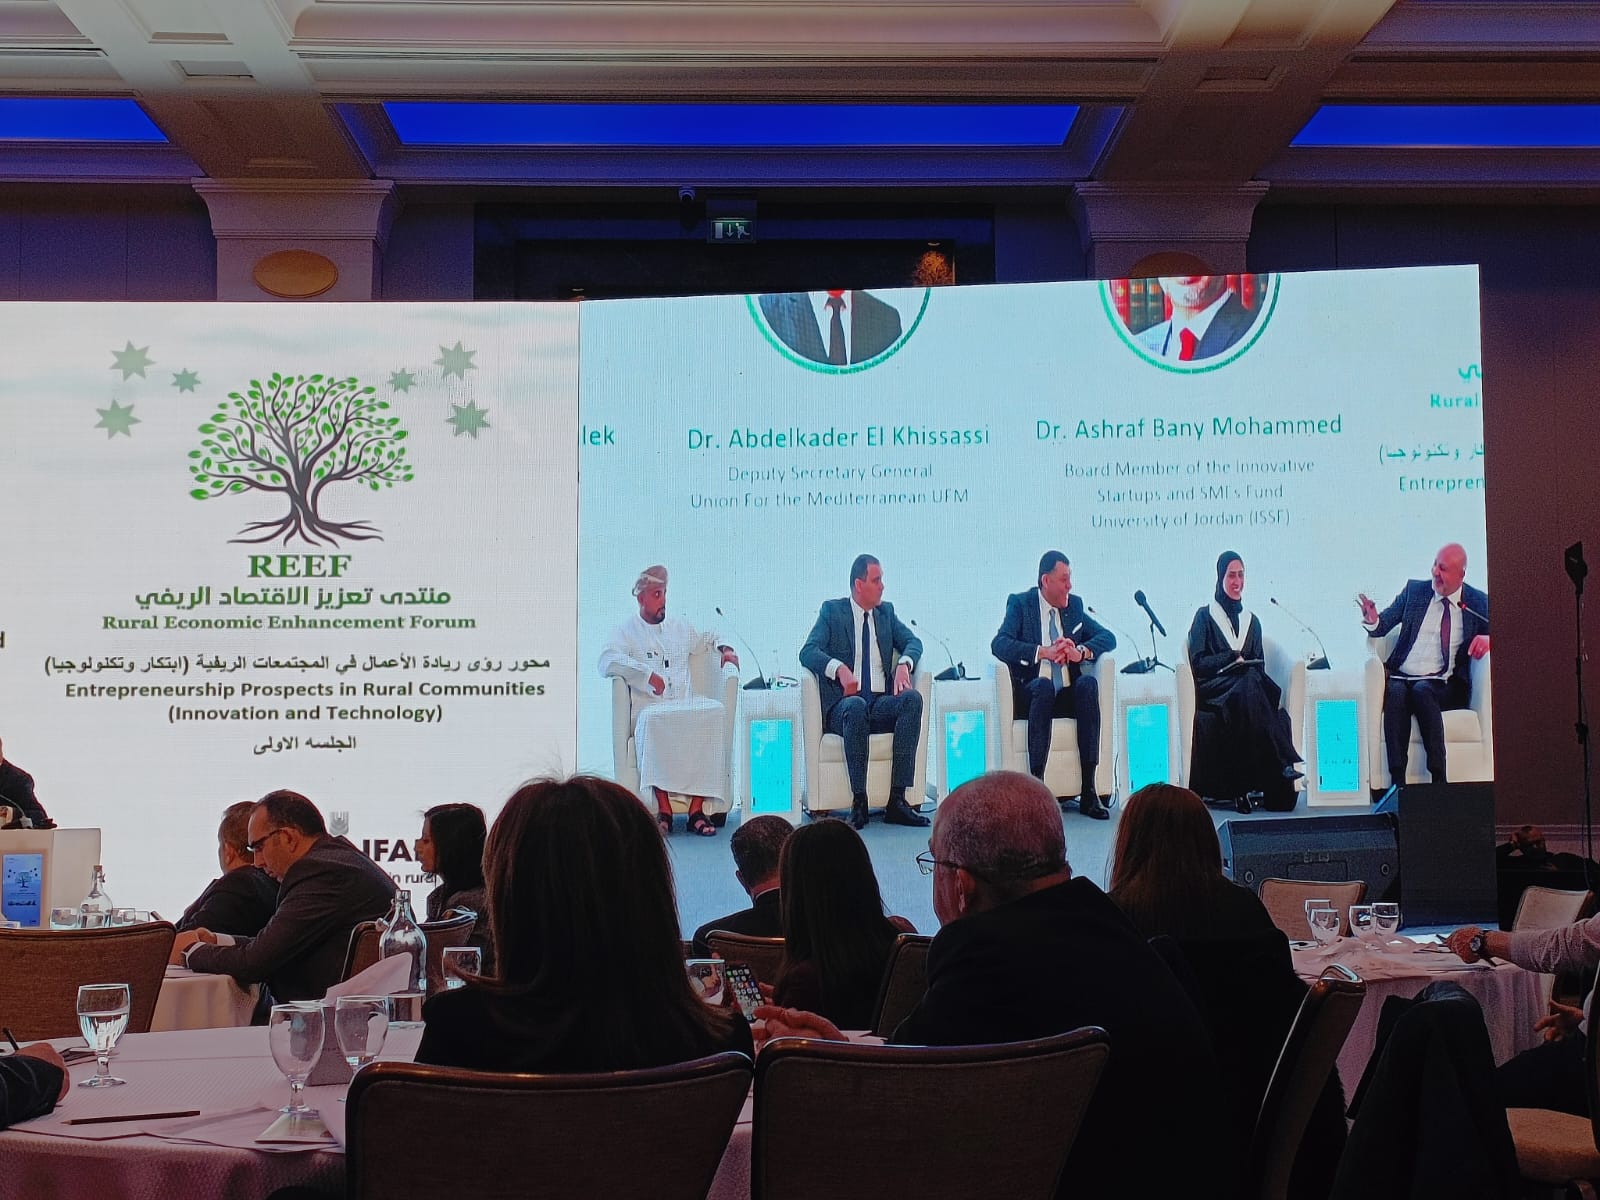 مبادرة لإنشاء الشبكة العربية لريادة الأعمال، على هامش اختتام فعاليات منتدى تعزيز الاقتصاد الريفي